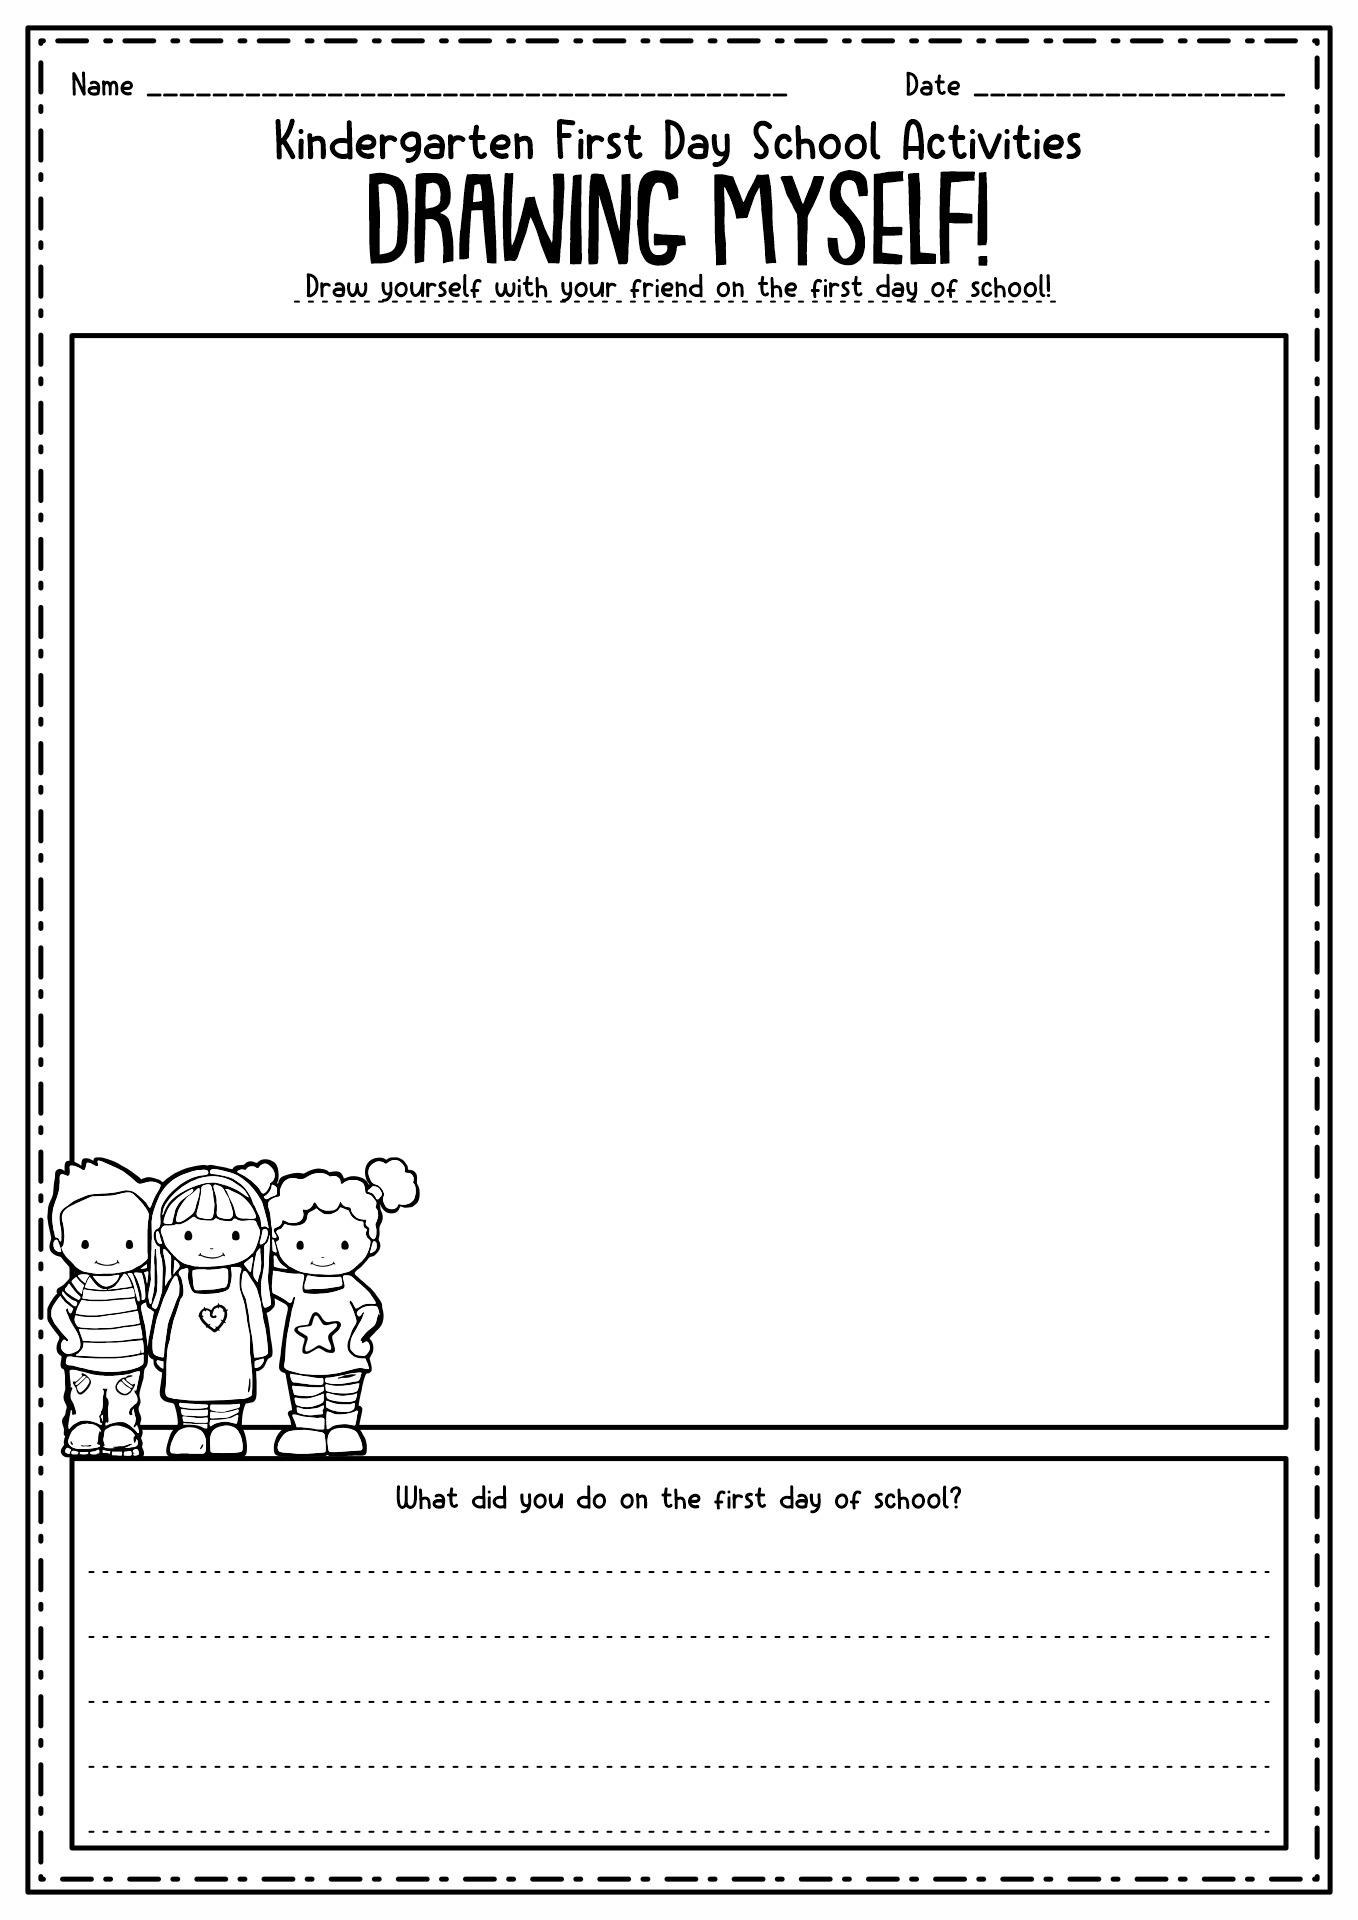 First Day Kindergarten Worksheets Image